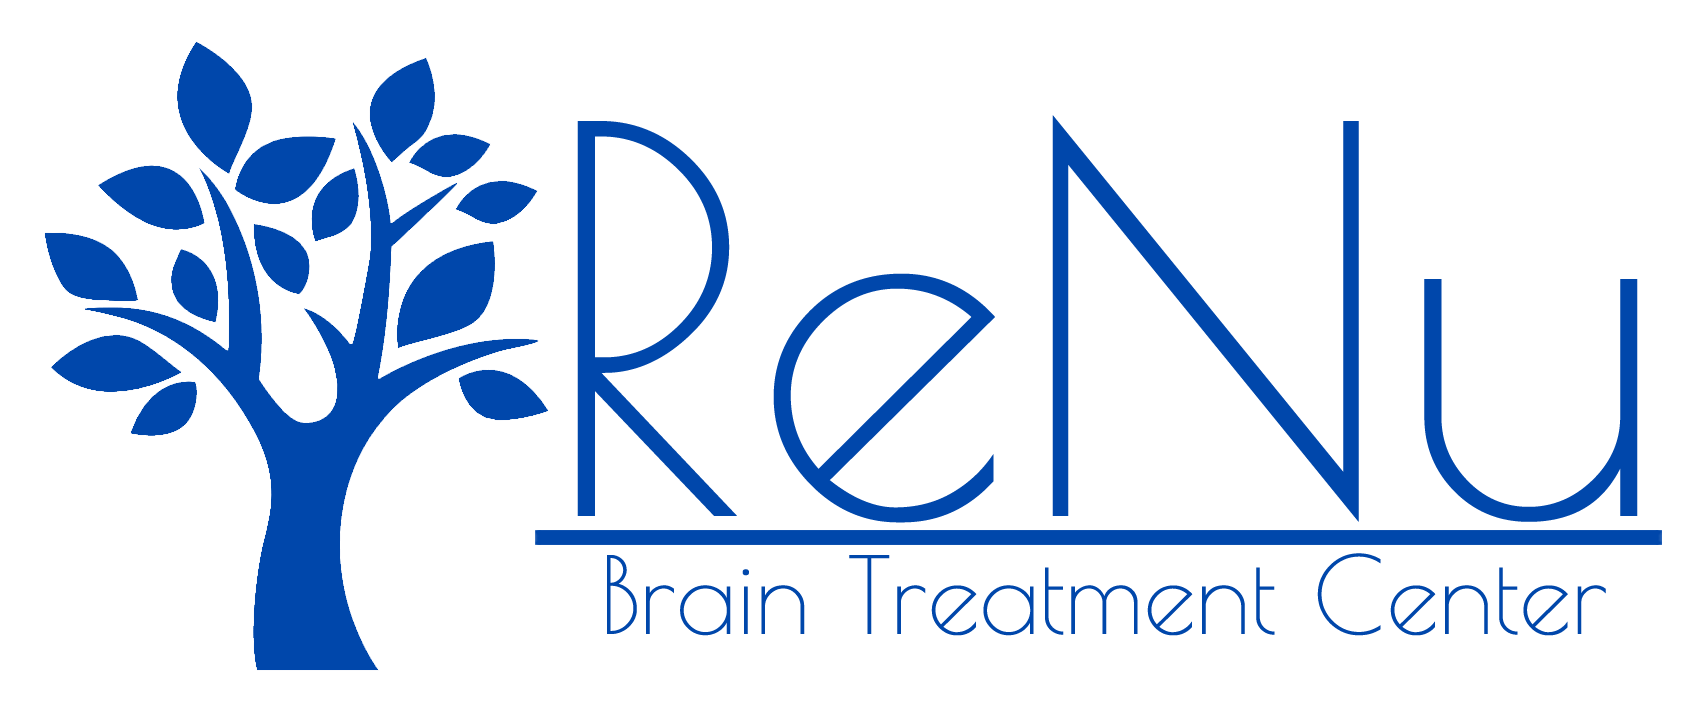 renu brain treatment center logo vertical